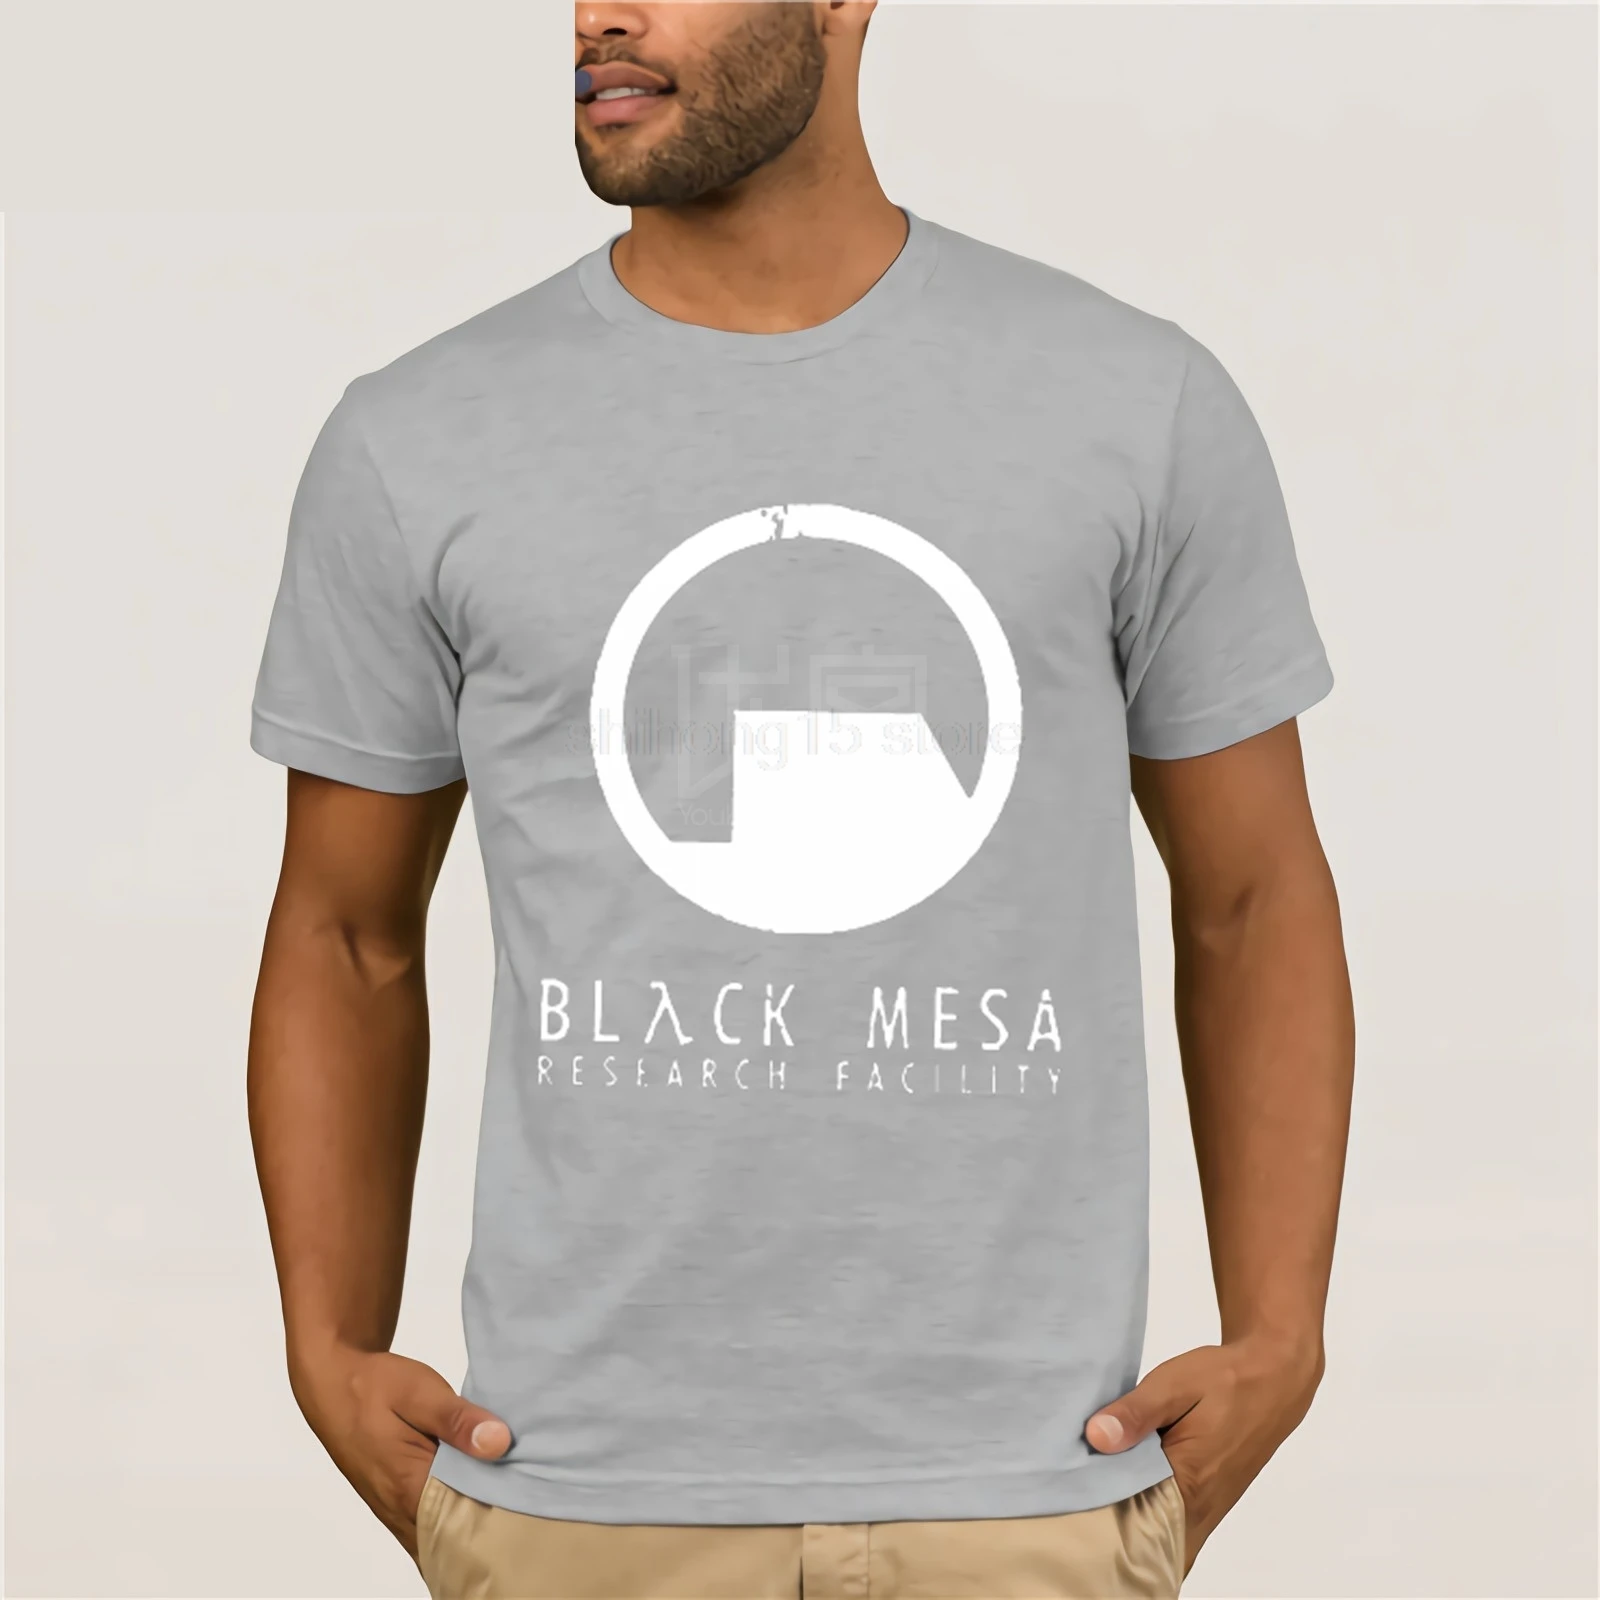 Black Mesa Half Life Футболка мужская крутая футболка европейские размеры-XXXL топы летние футболки хлопковая Футболка с круглым вырезом - Цвет: light grey